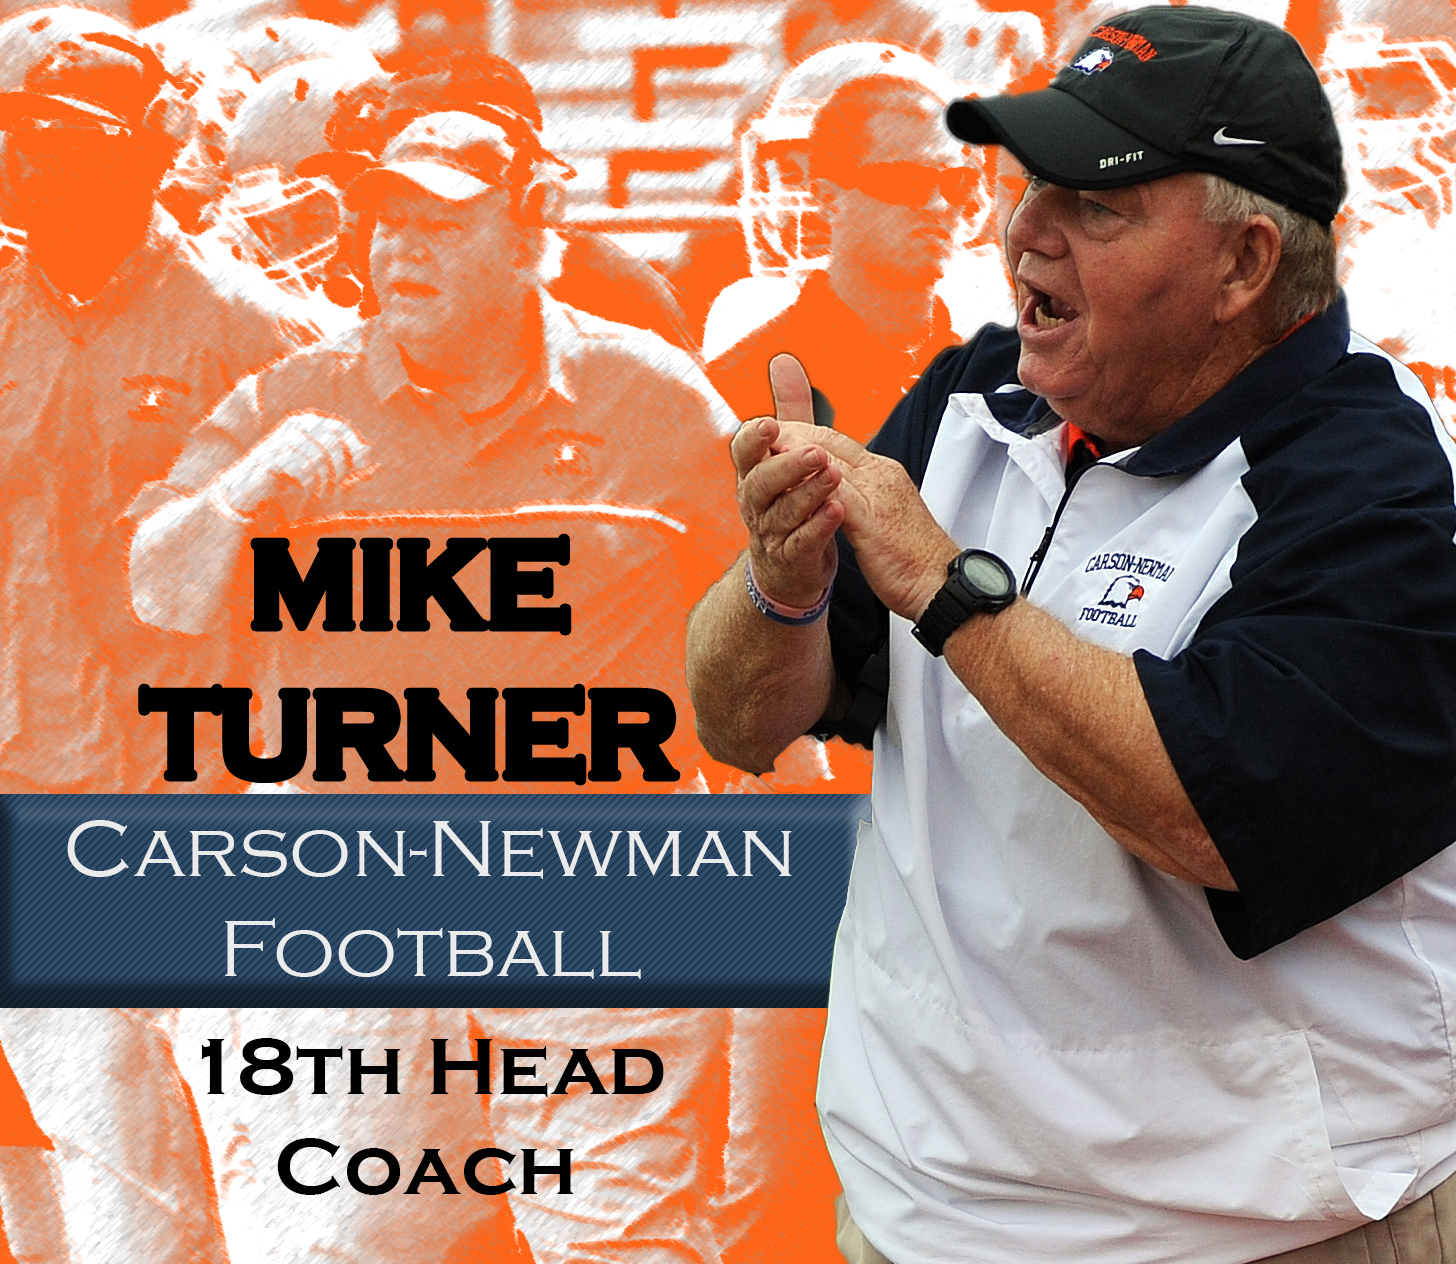 Turner tabbed as Carson-Newman football’s 18th head coach